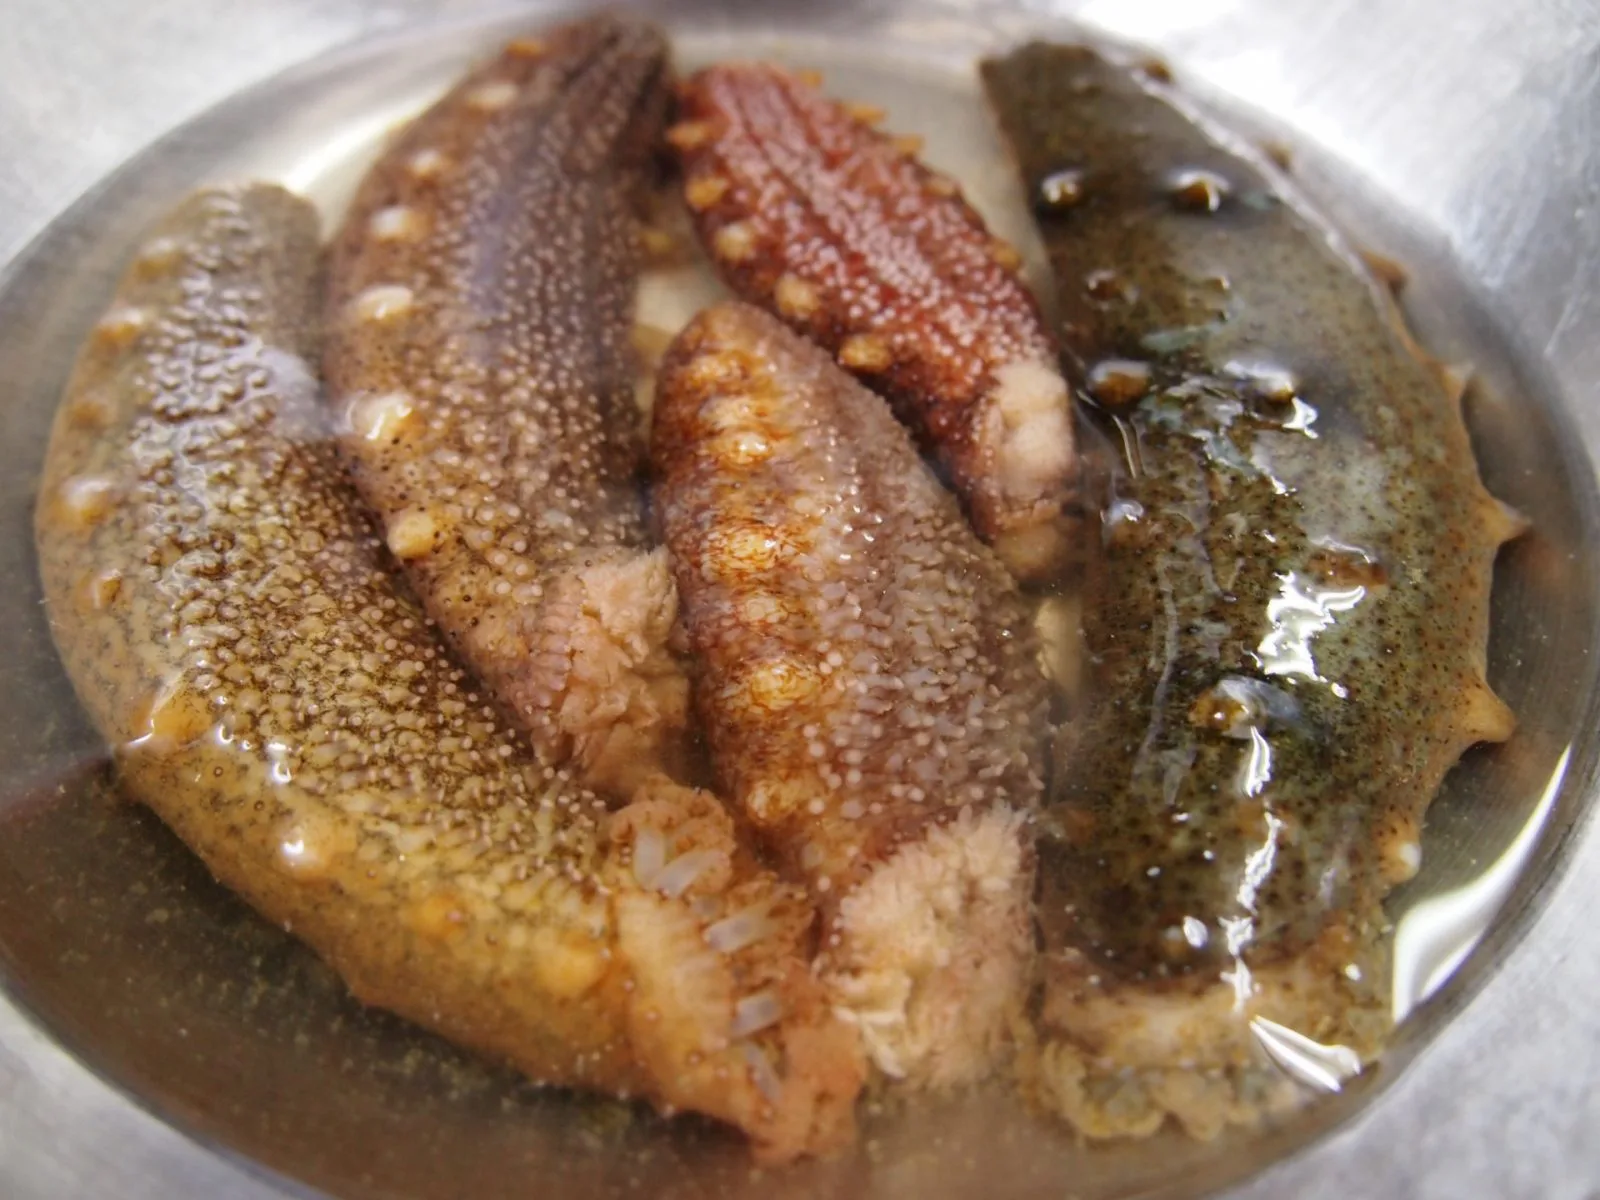 ナマコ 海鼠 が初物 ナマコ酢で食べると最高に美味しい 鮮魚販売